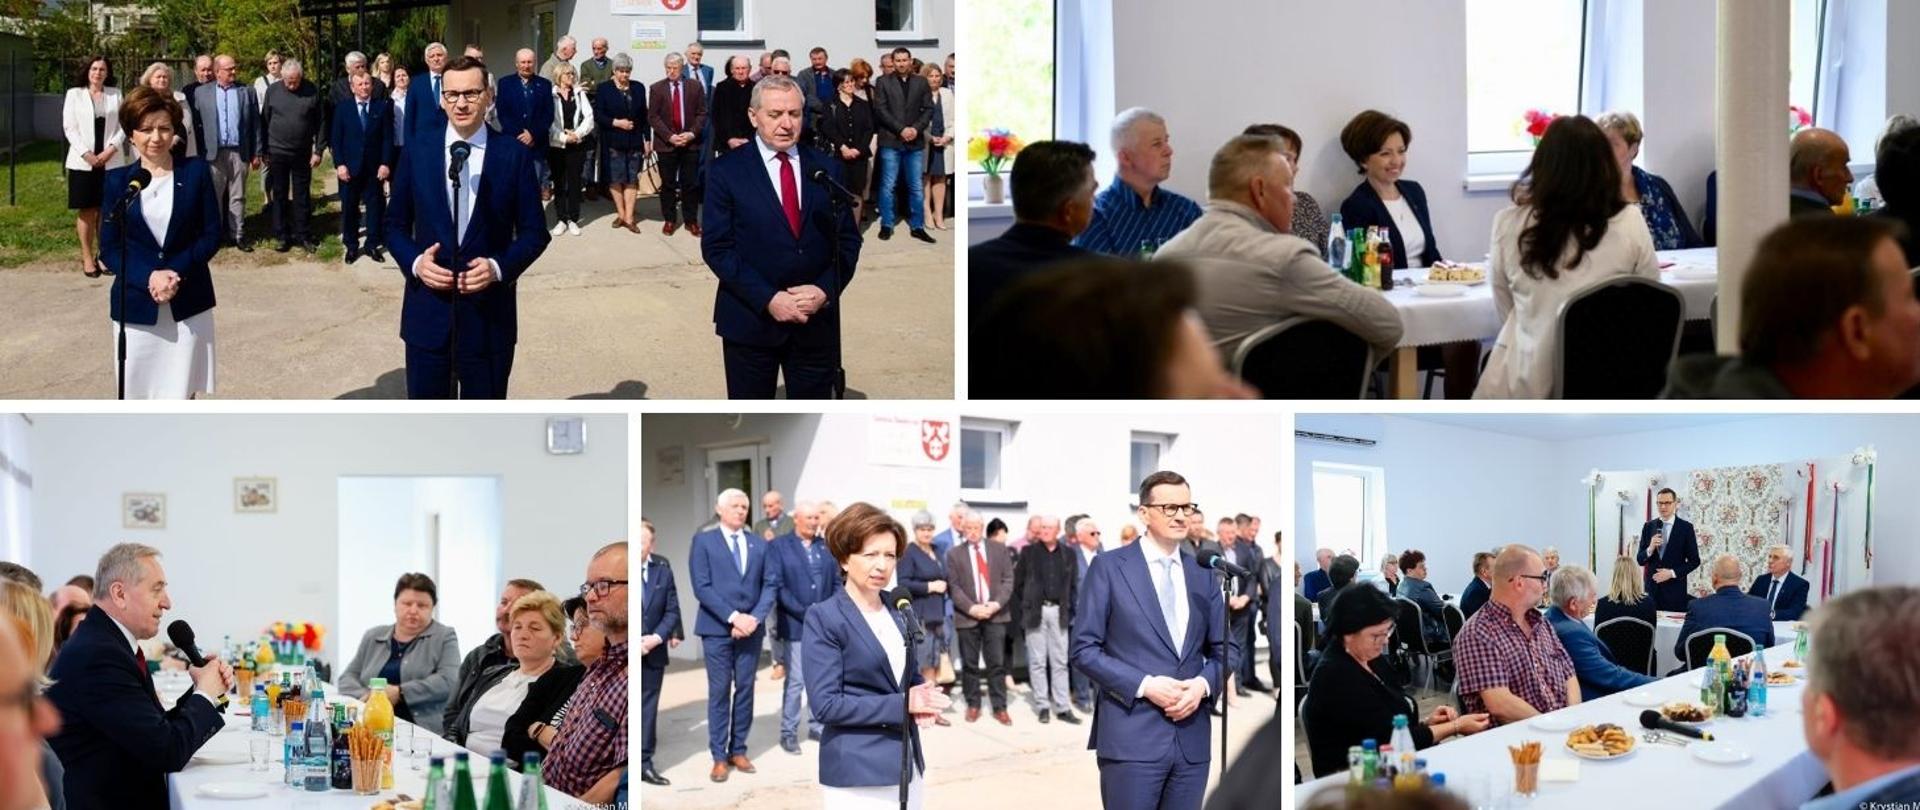 kolaż zdjęć z wizyty premiera Morawieckiego i minister Maląg. Pięć zdjęć na których widoczne są osoby biorące udzial w spotkaniu.